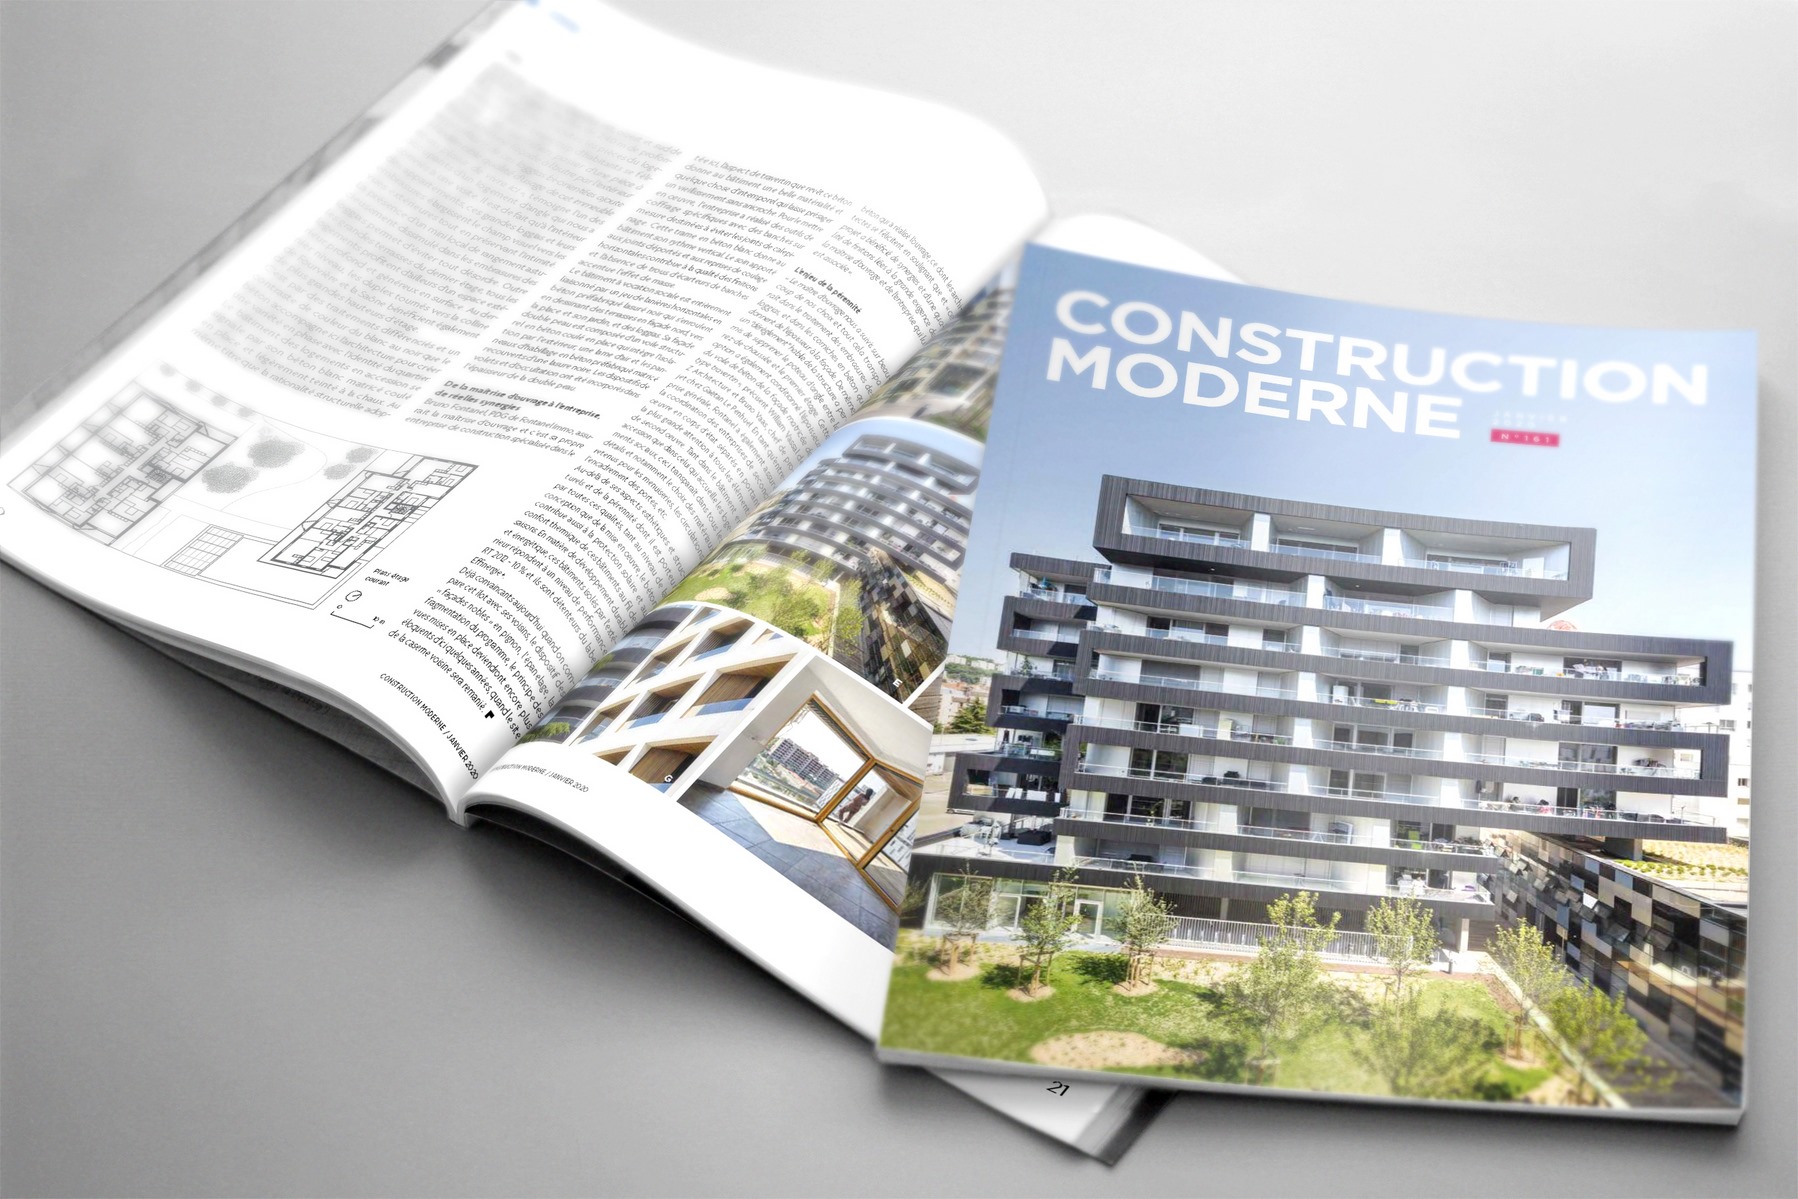 Construction Moderne - Ilot G Lyon - Z Architecture